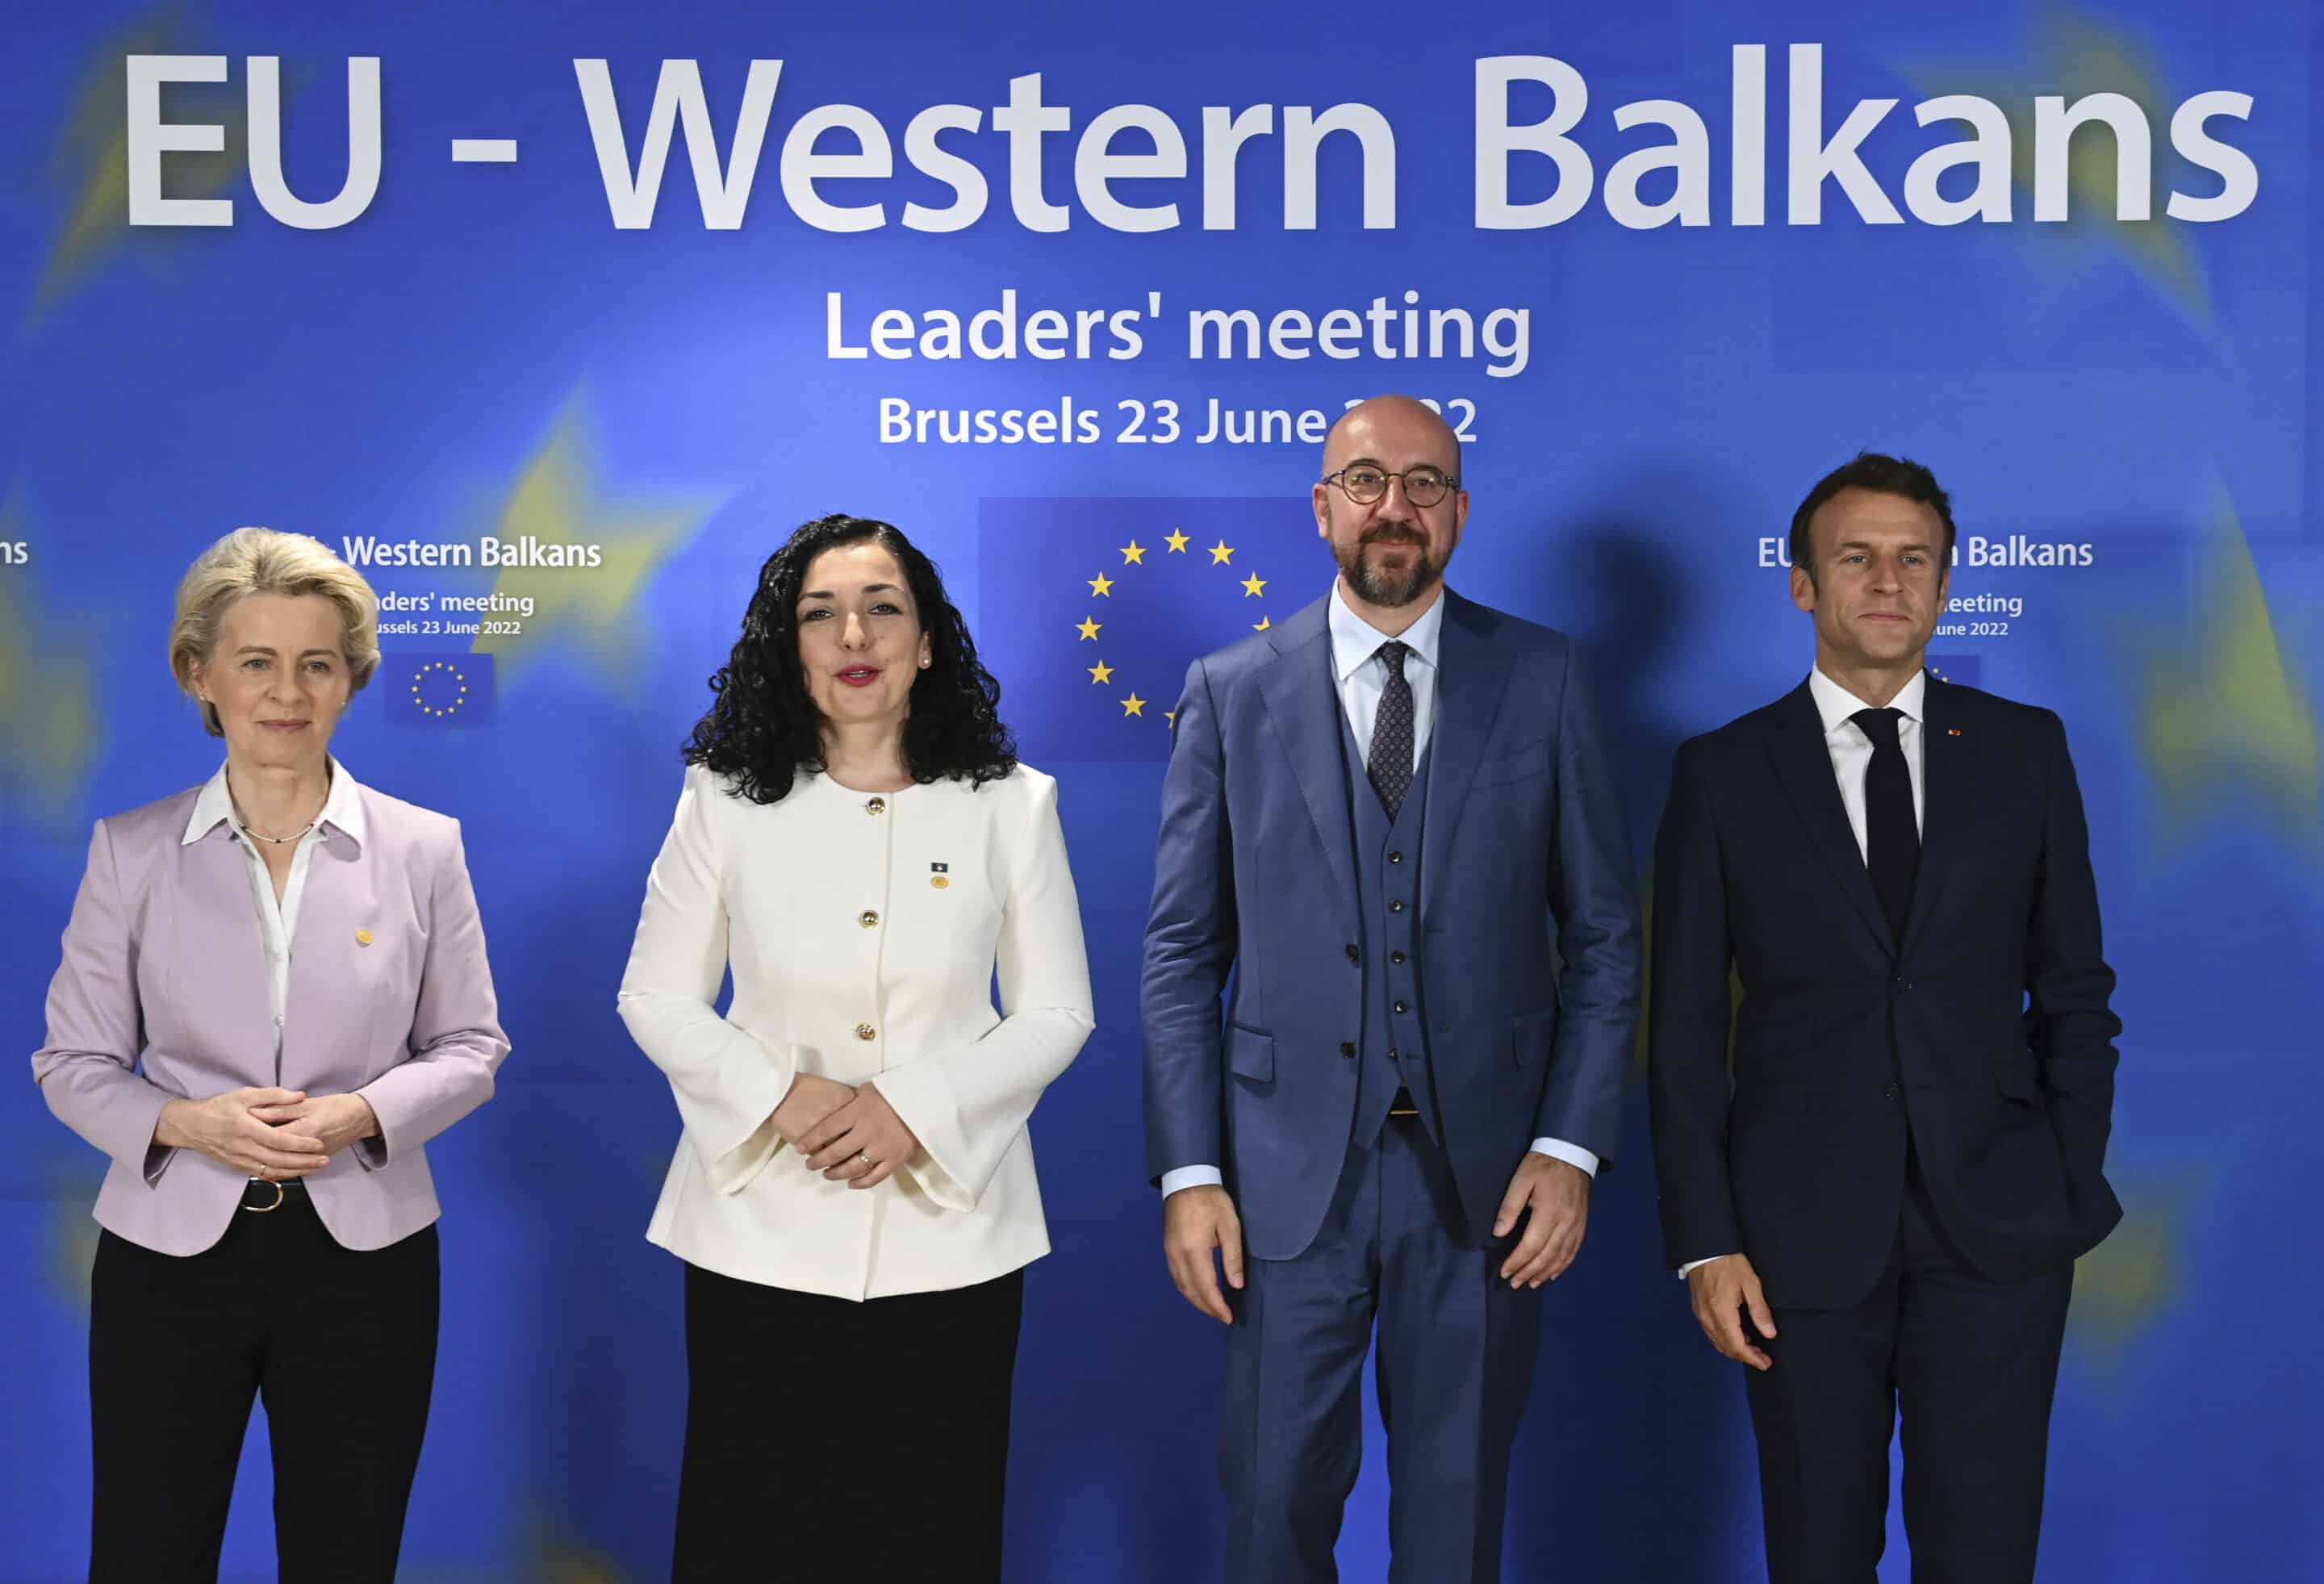 L’intégration des Balkans dans l’UE est un processus complexe. Entretien avec Henry Zipper de Fabiani